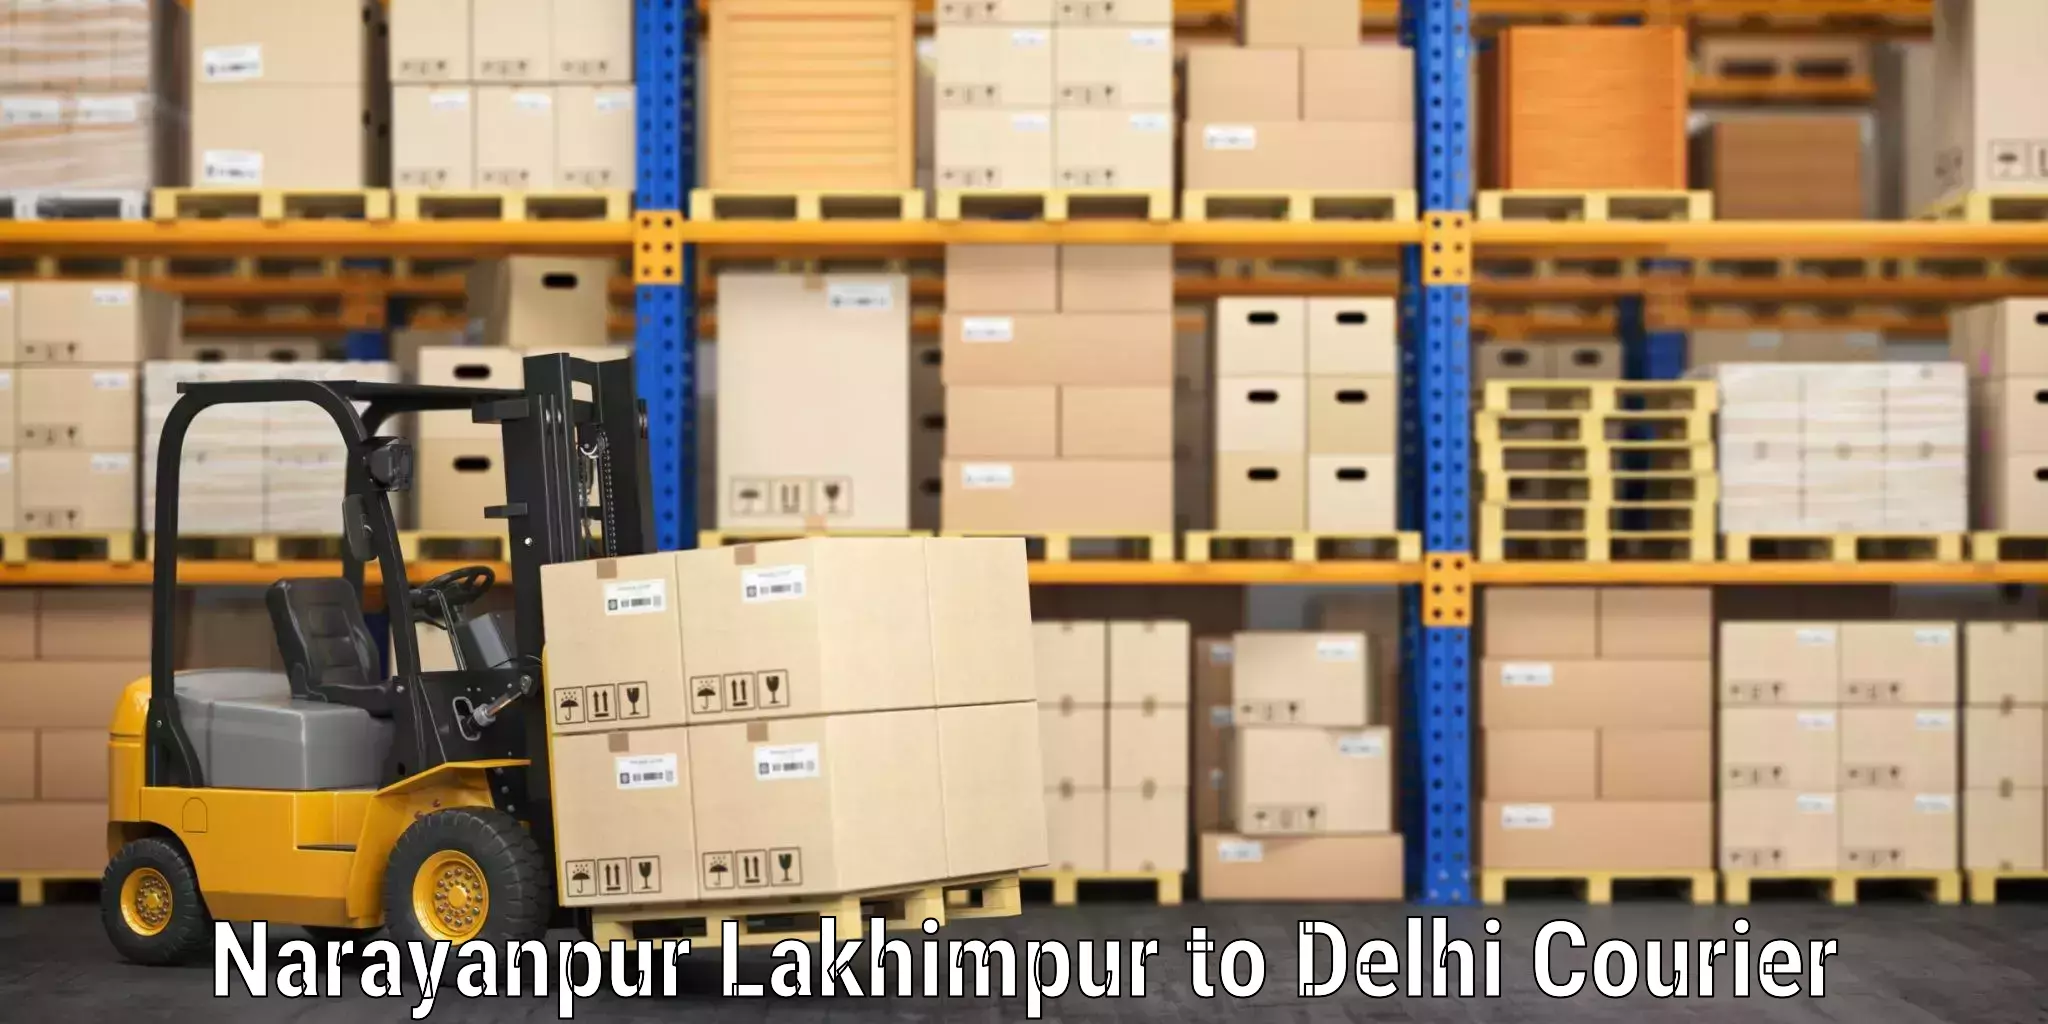 Luggage dispatch service Narayanpur Lakhimpur to Burari